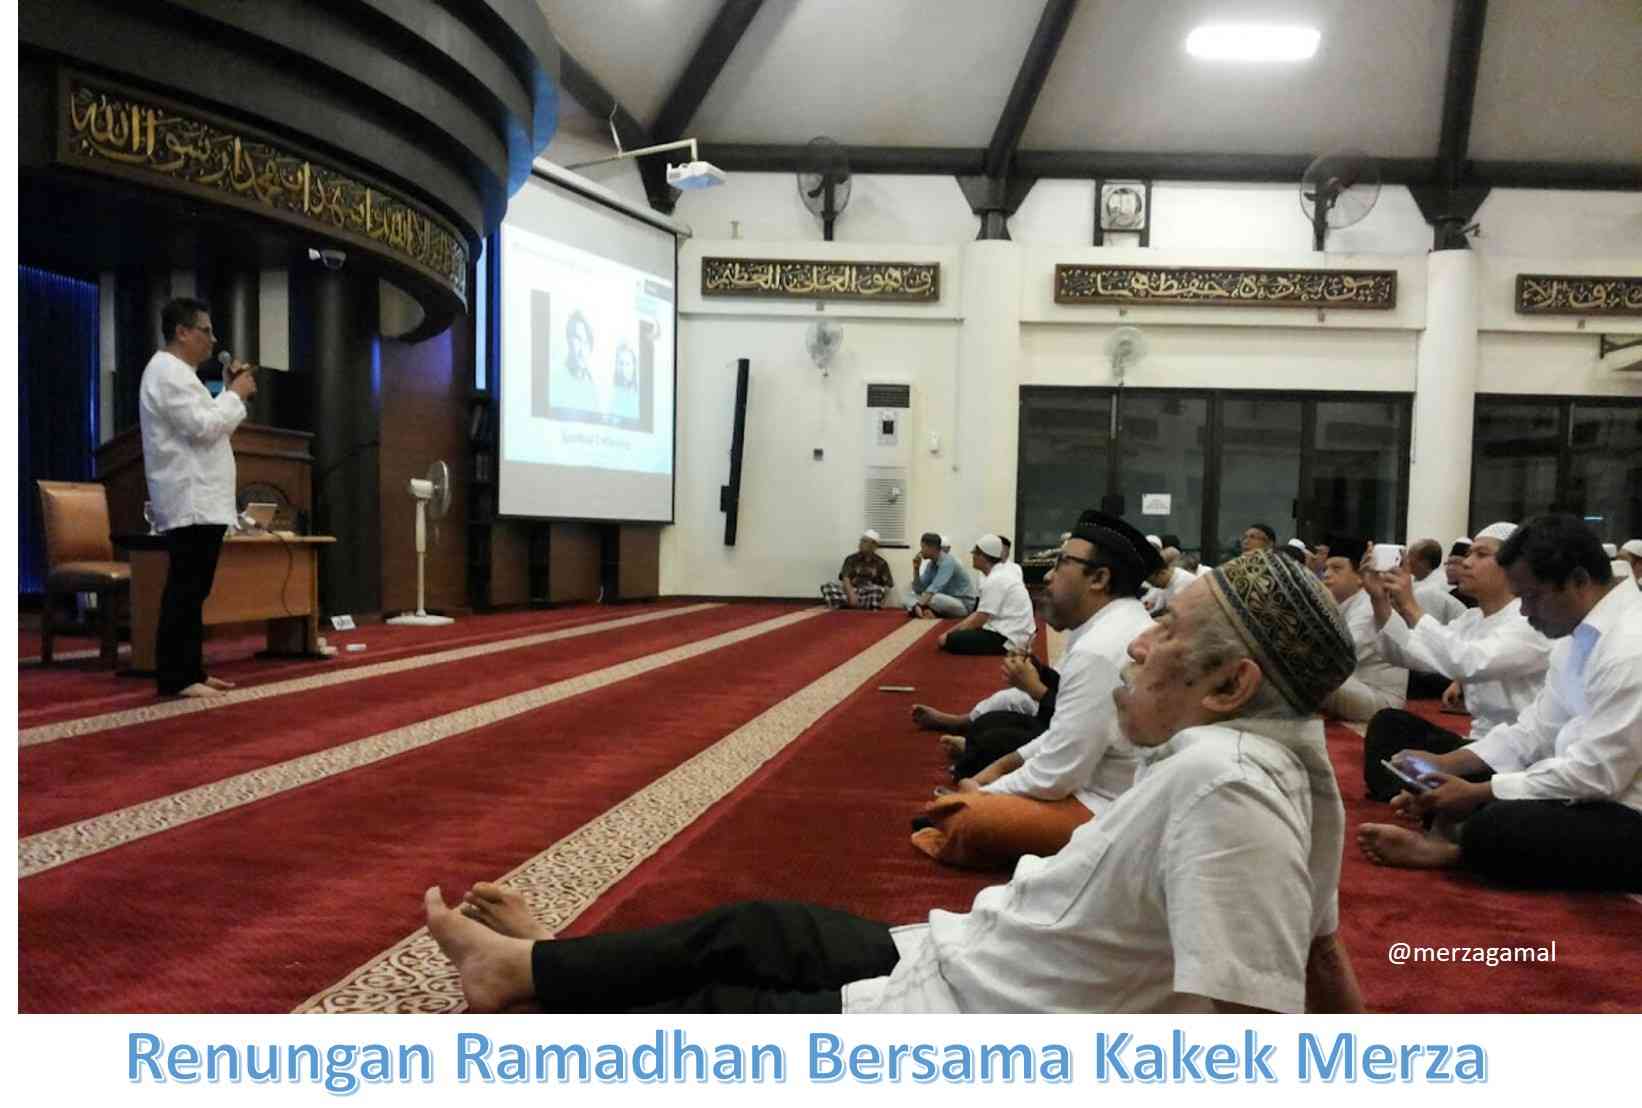 Image: Renungan Ramadhan bersama Kakek Merza (08)